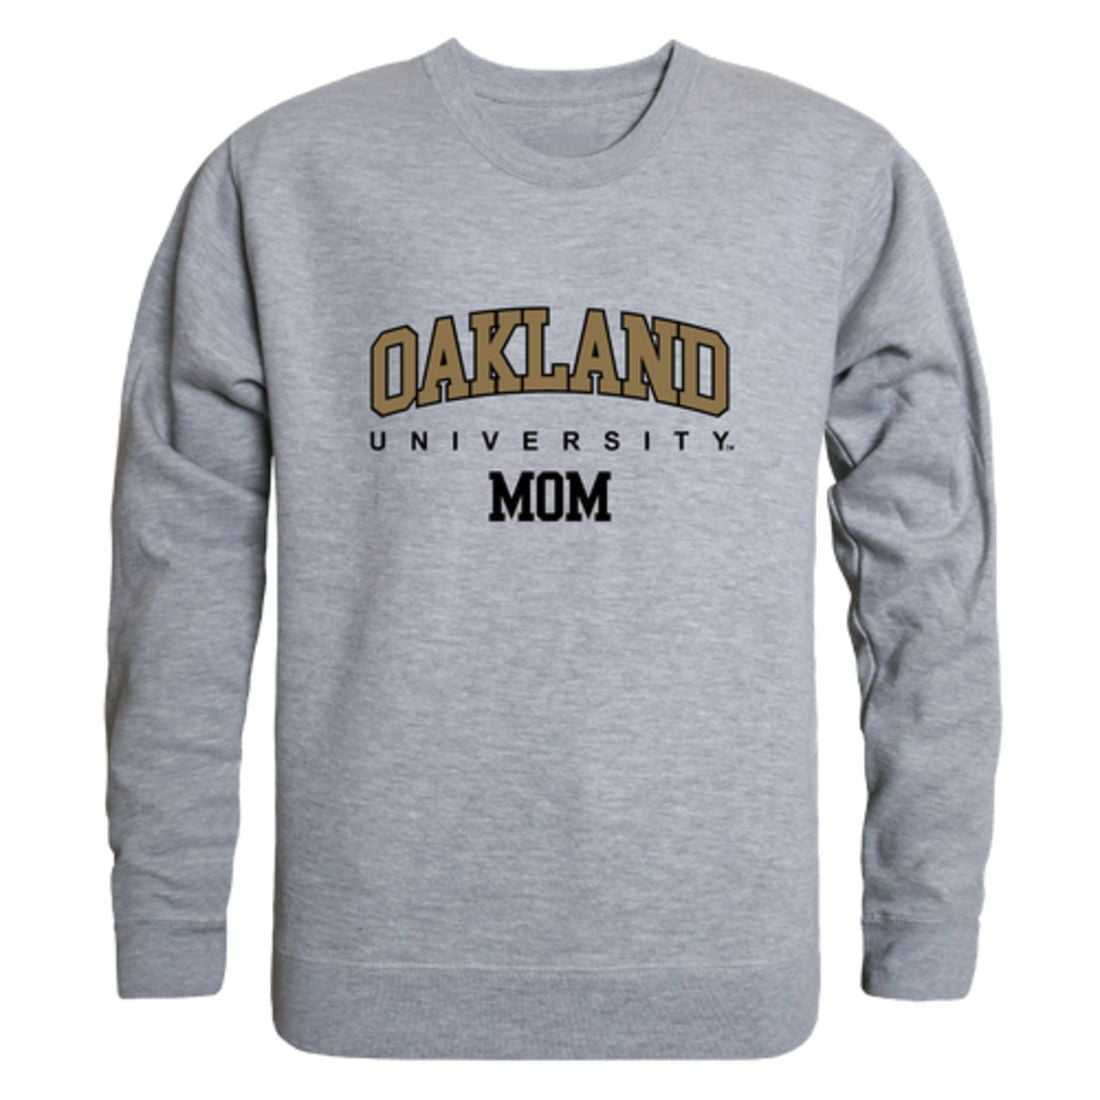 Oakland University Golden Grizzlies OU NCAA College I Love Hoodie Sweatshirt